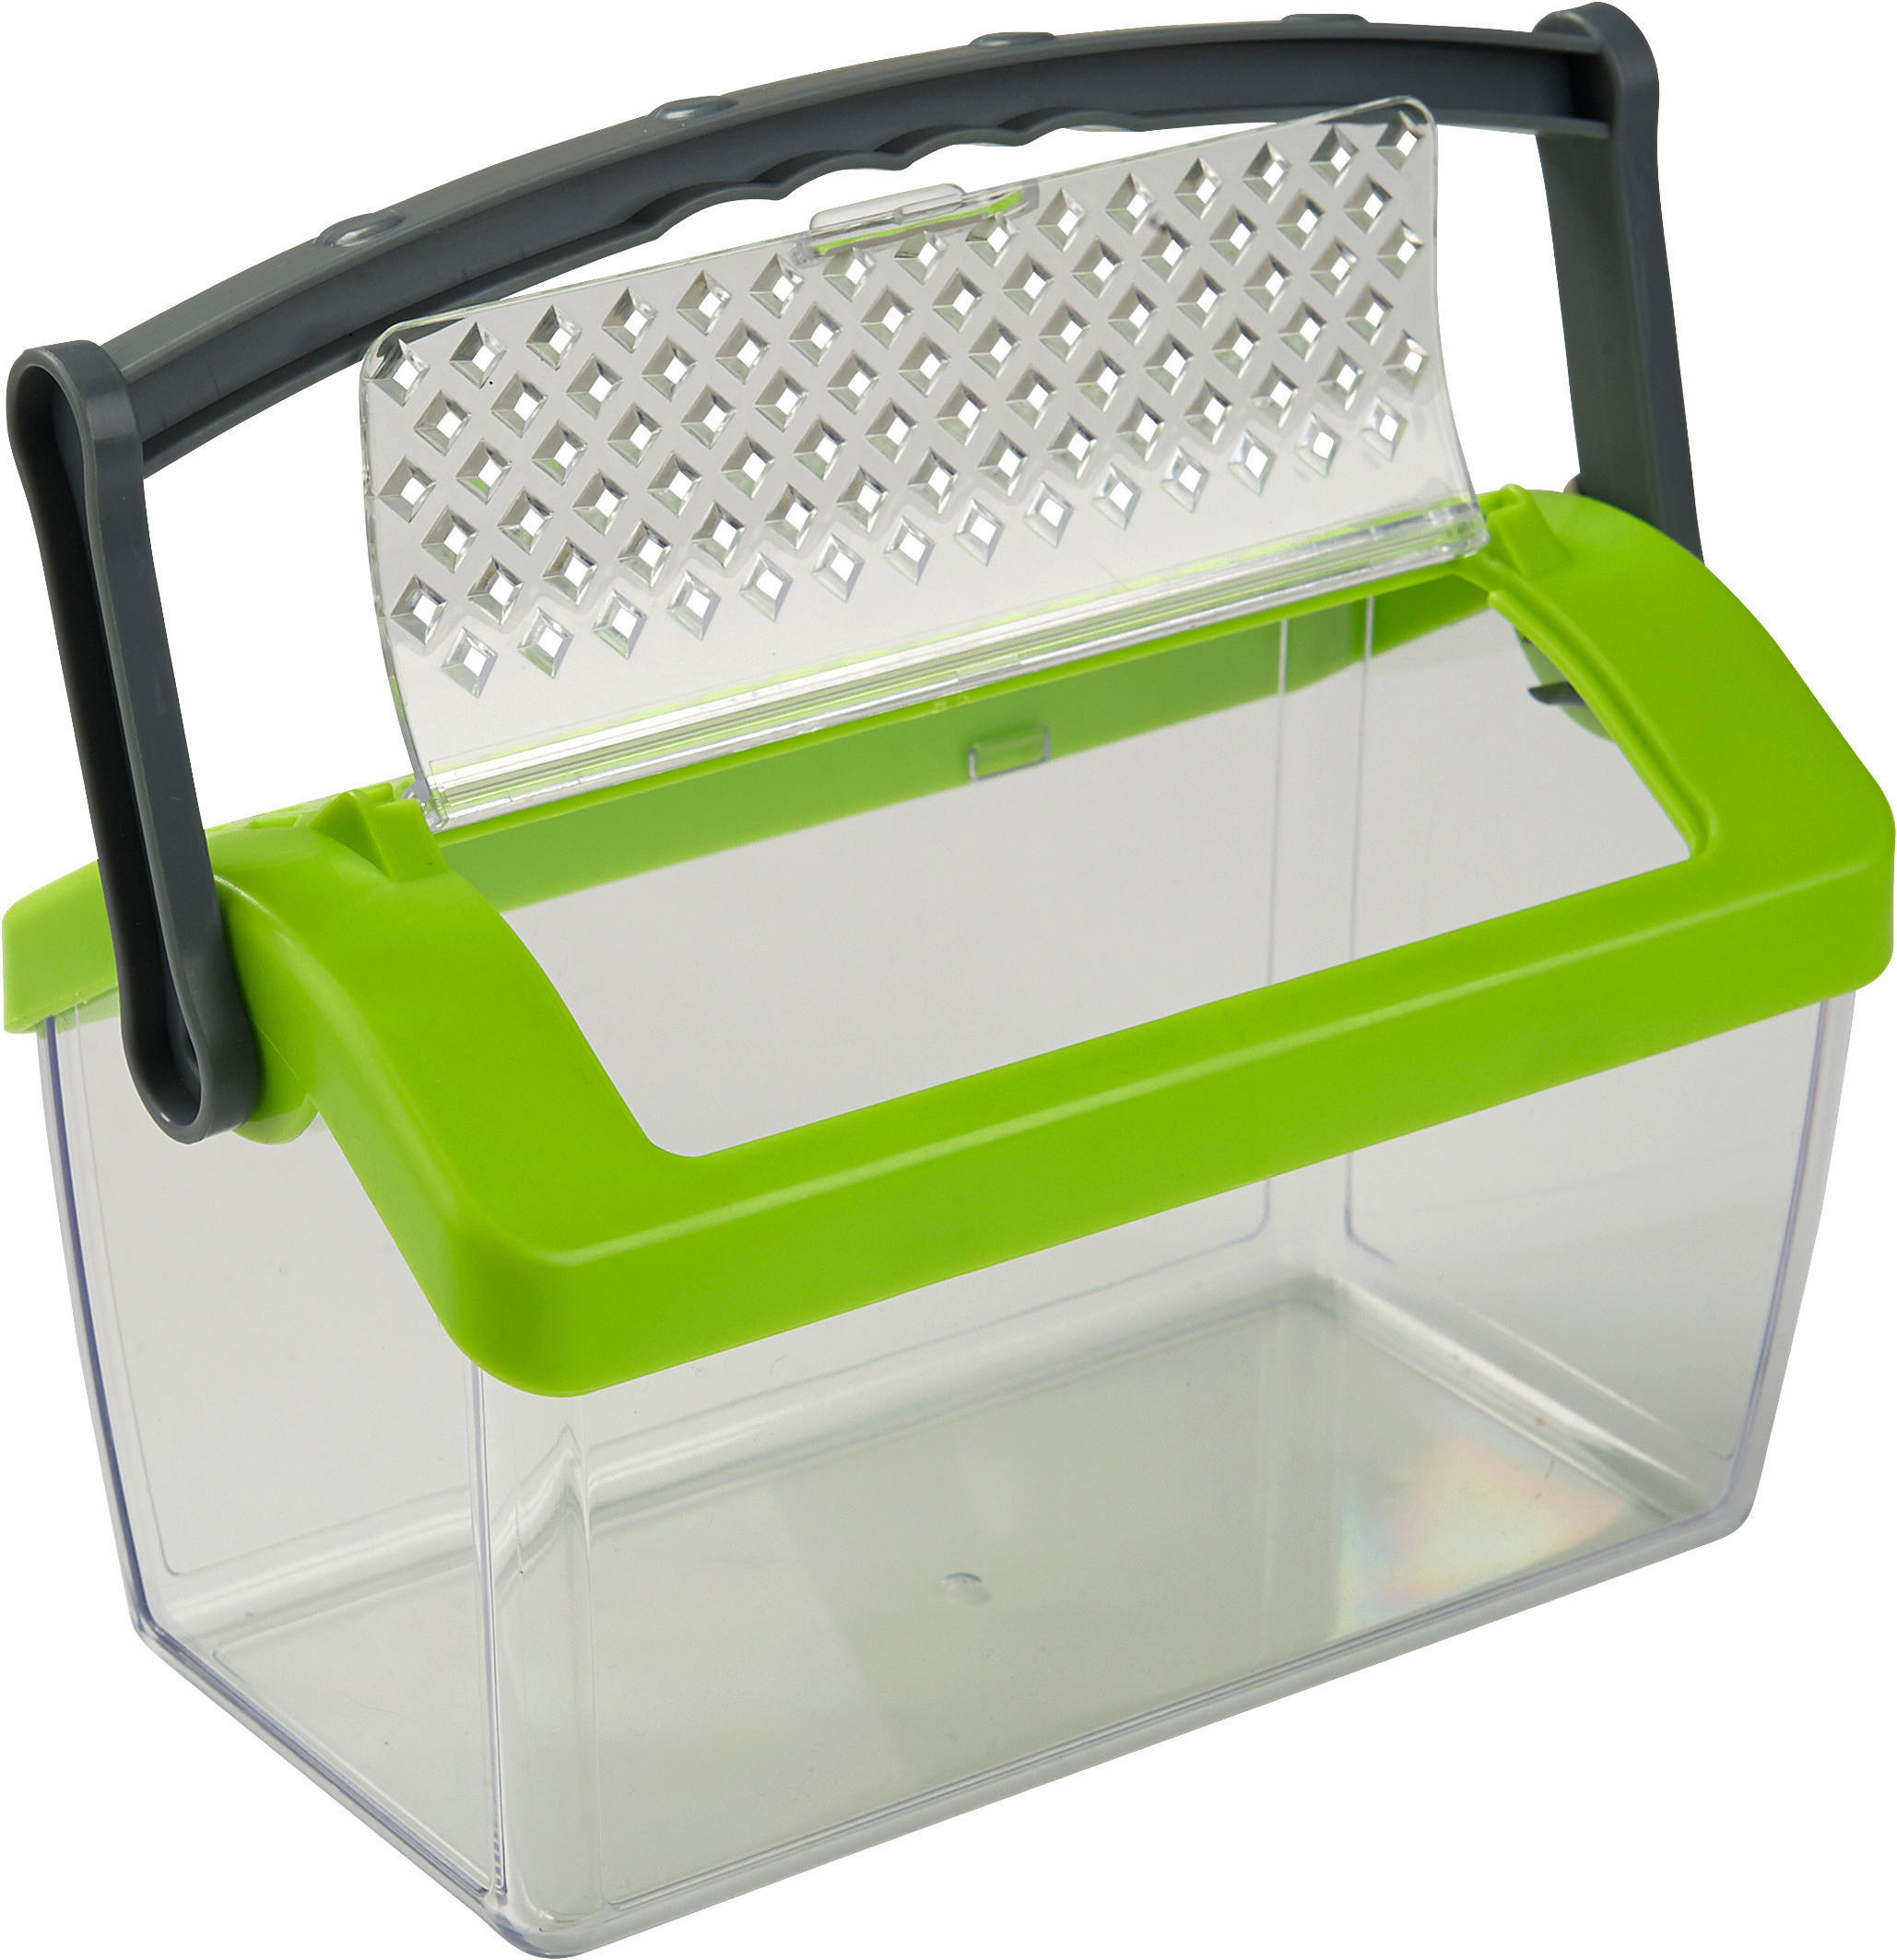 KINDER-INSEKTENSAMMELBOX - Transparent/Grün, Basics, Kunststoff (19,5/10,5/11,5cm) - Haba